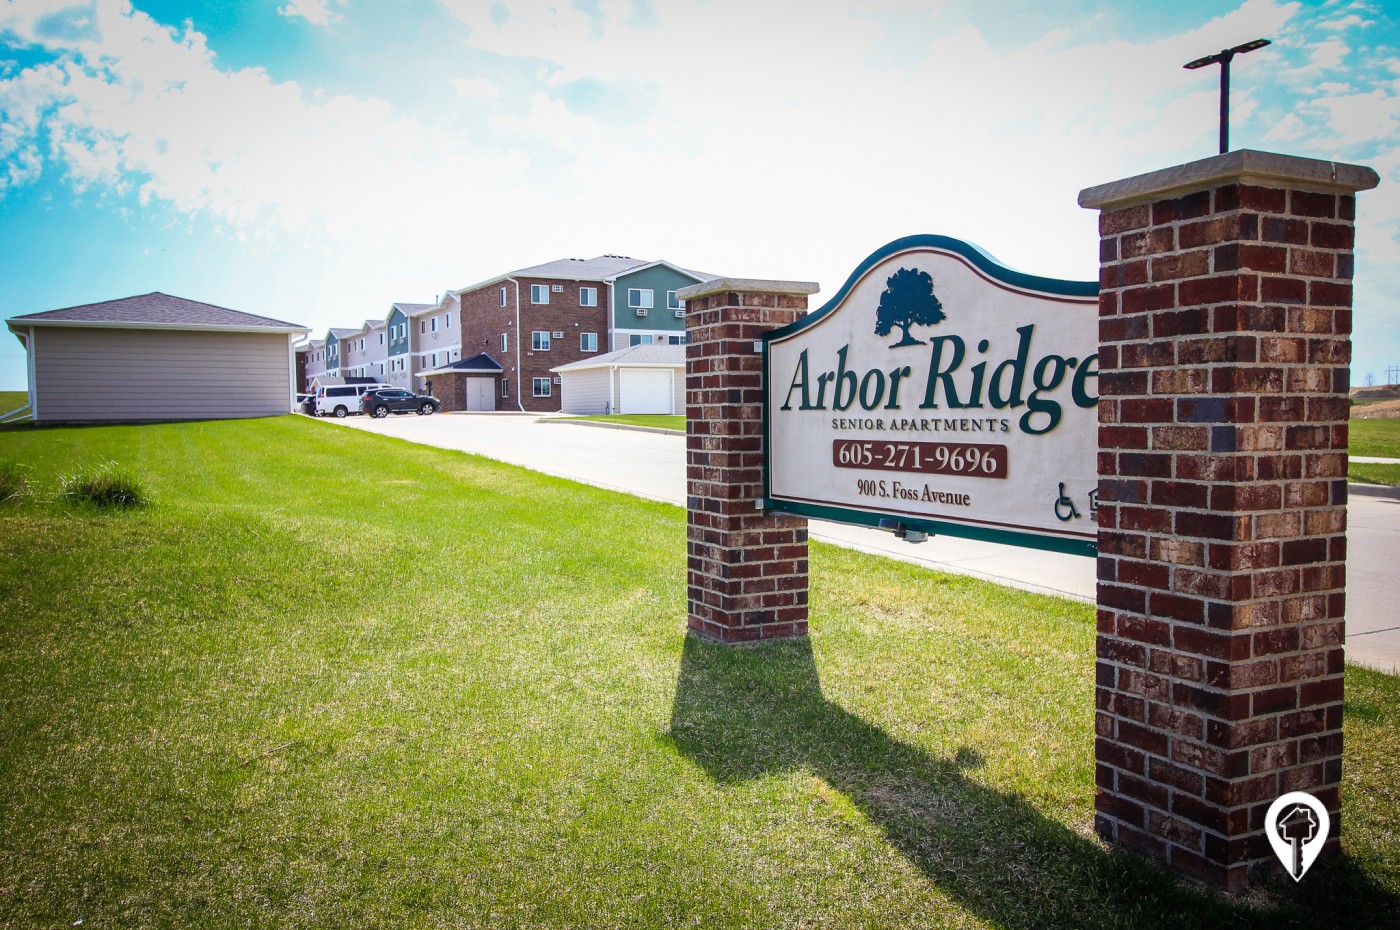 Arbor Ridge Senior Apartments